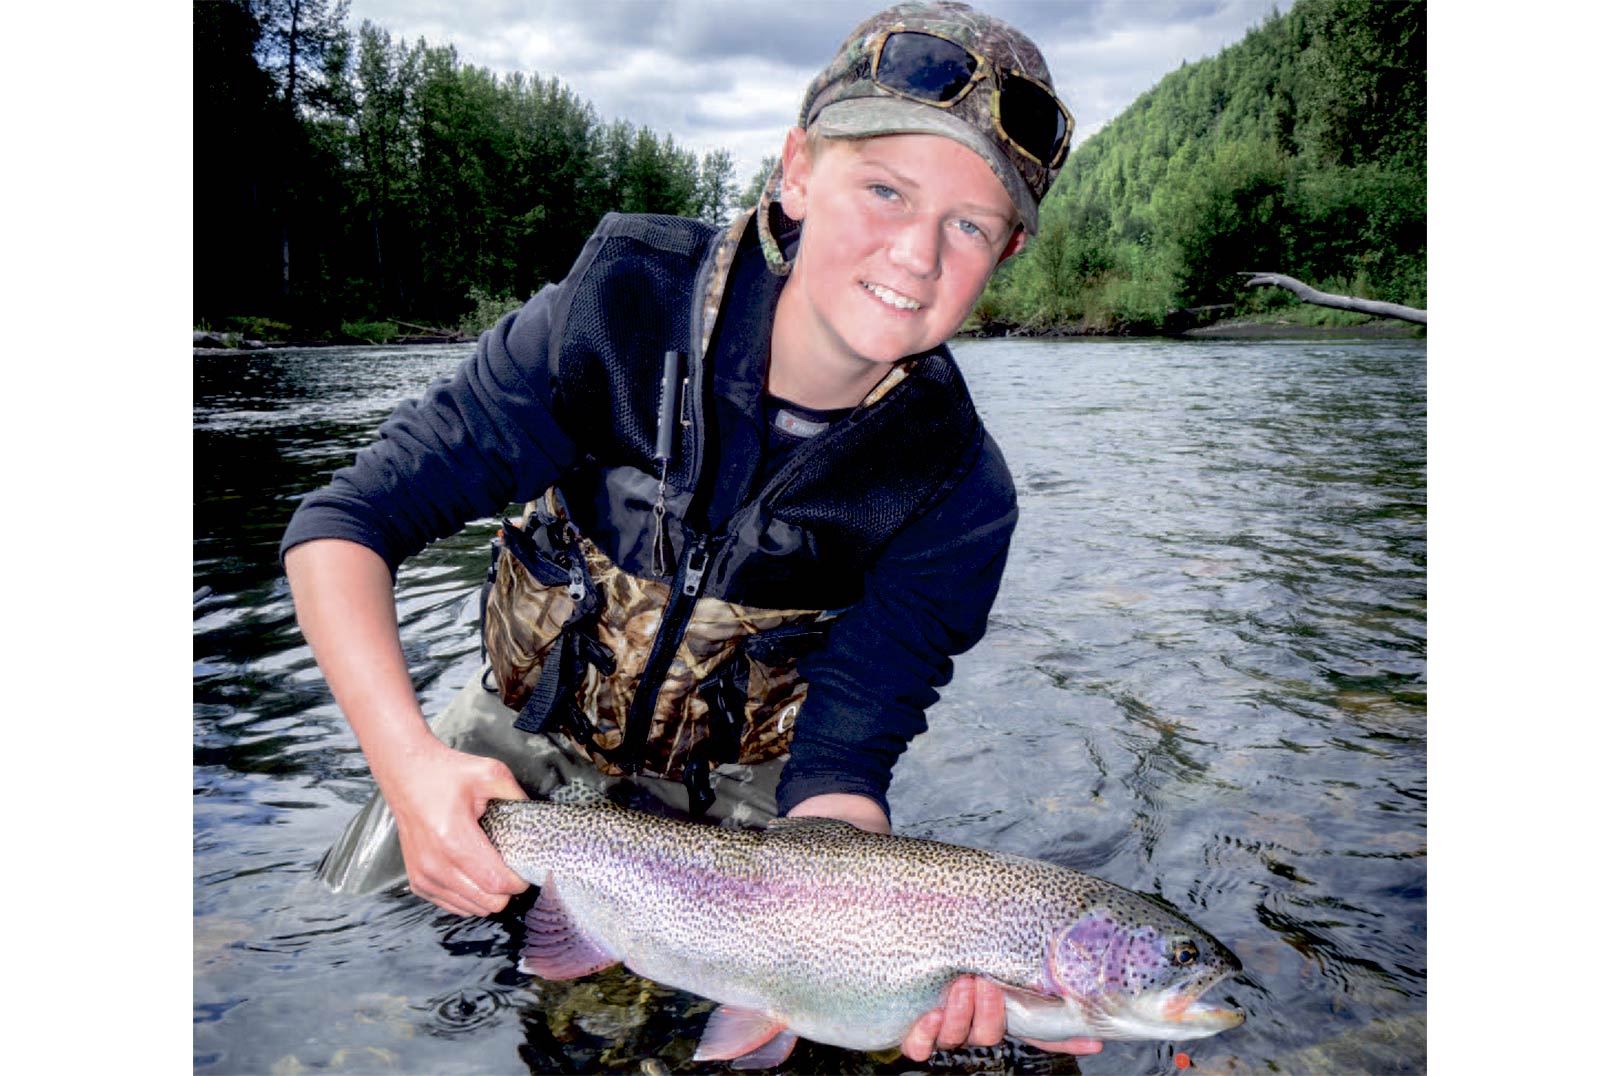 Forfatterens søn Gustav med en af turens drømmefisk. En smæller fedregnbueørred på 57 cm.